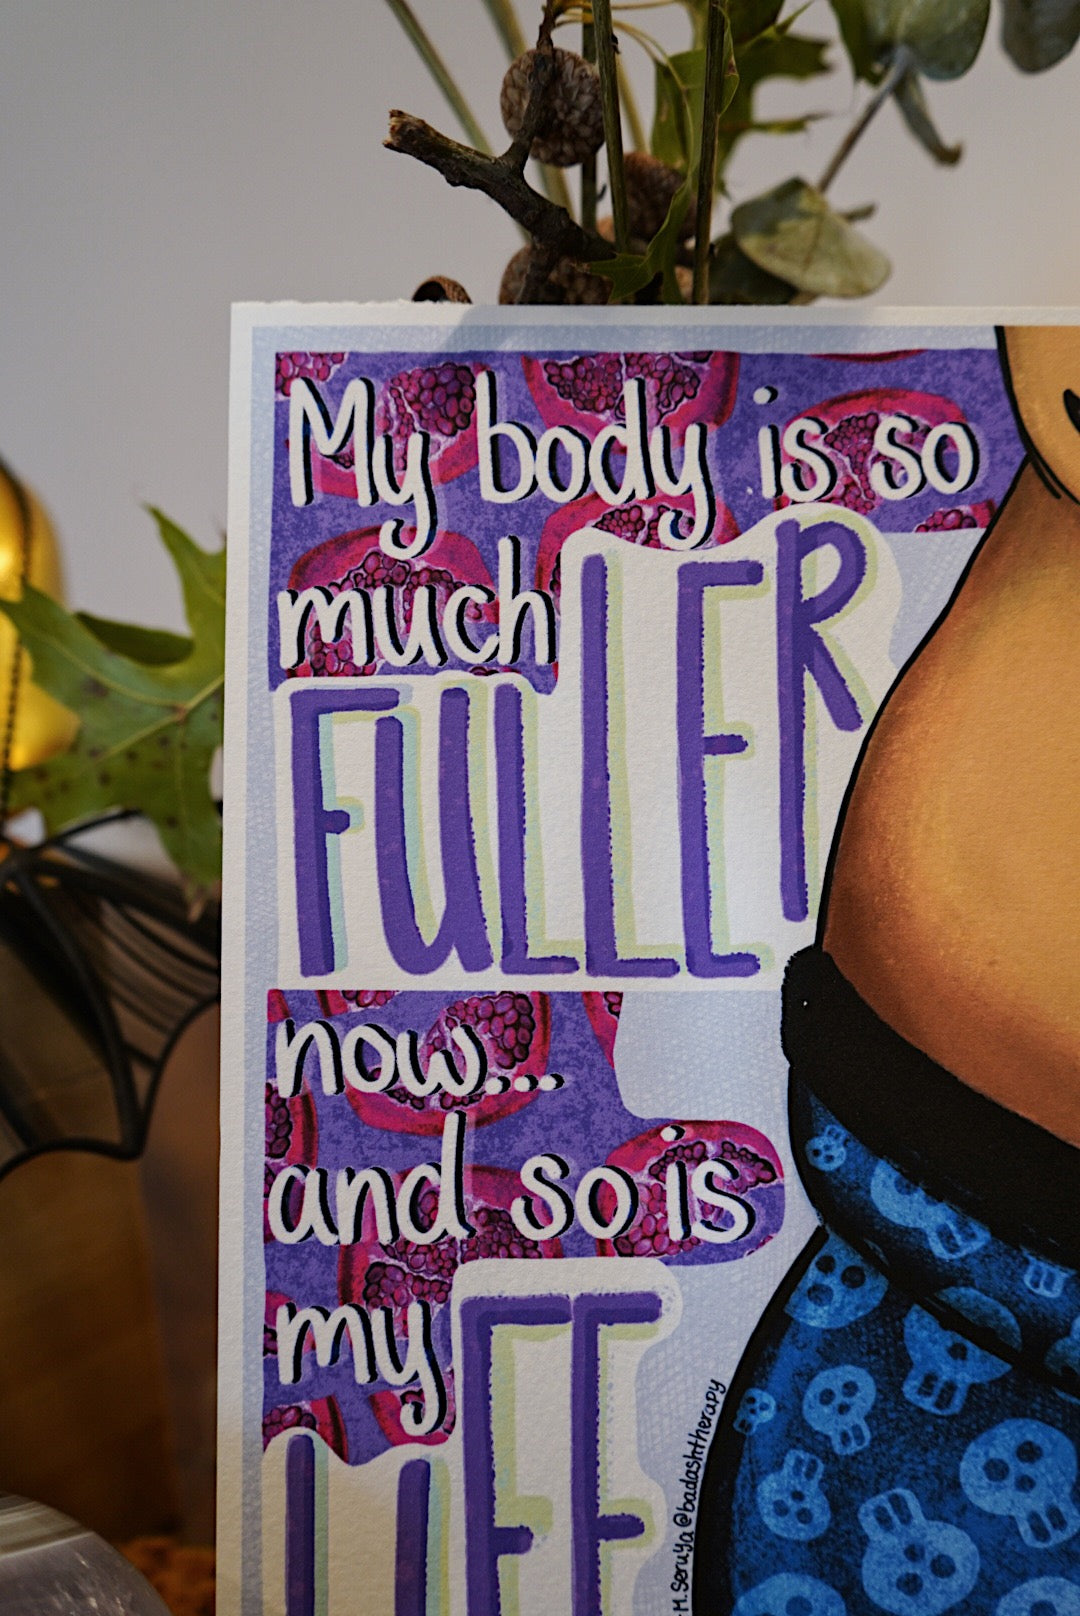 Fuller Body, Fuller Life